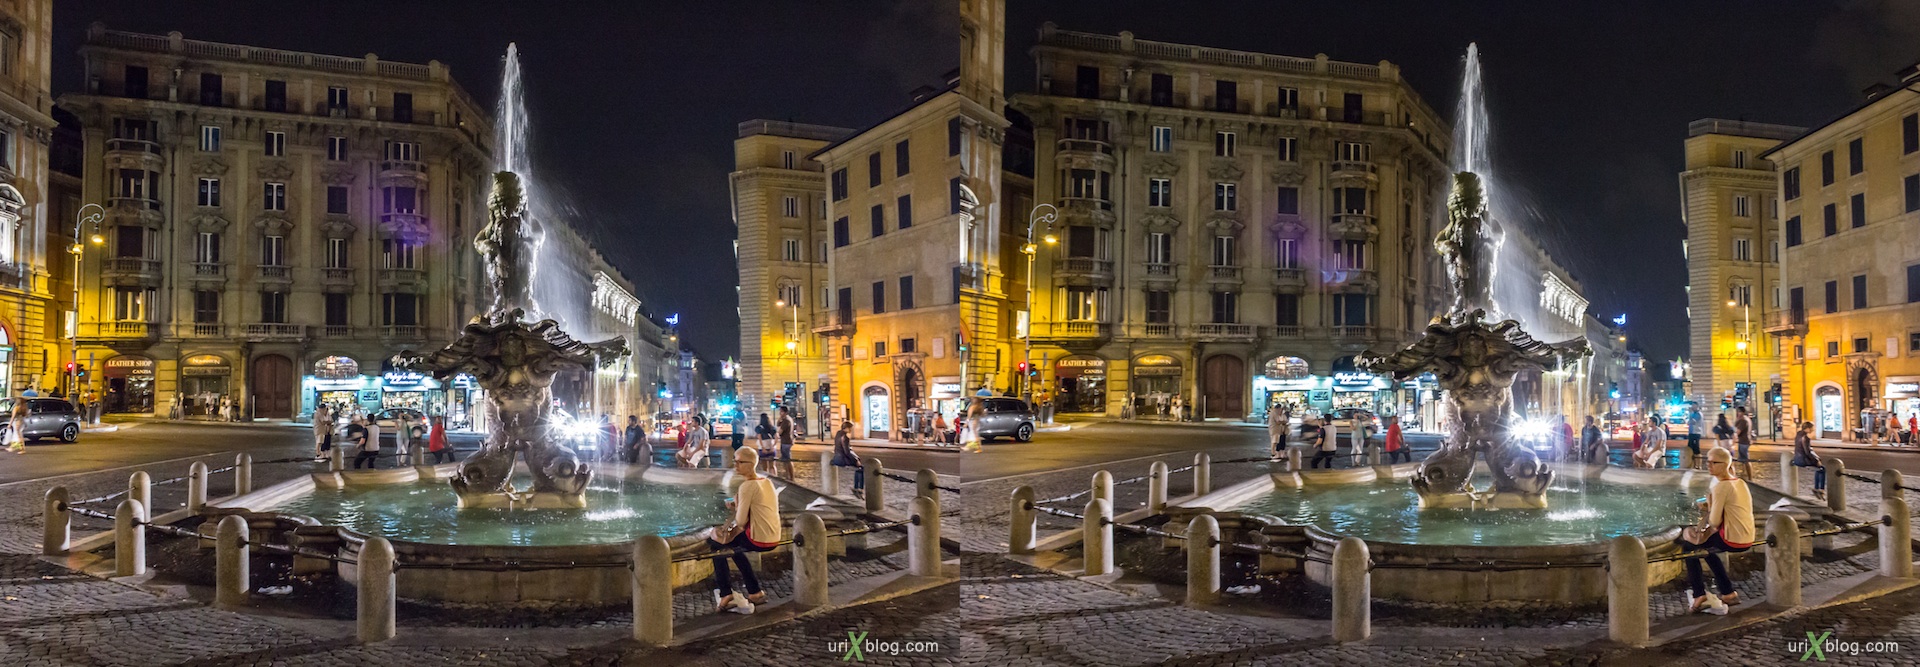 2012, фонтан Тритон, площадь Барберини, Рим, Италия, 3D, перекрёстные стереопары, стерео, стереопара, стереопары